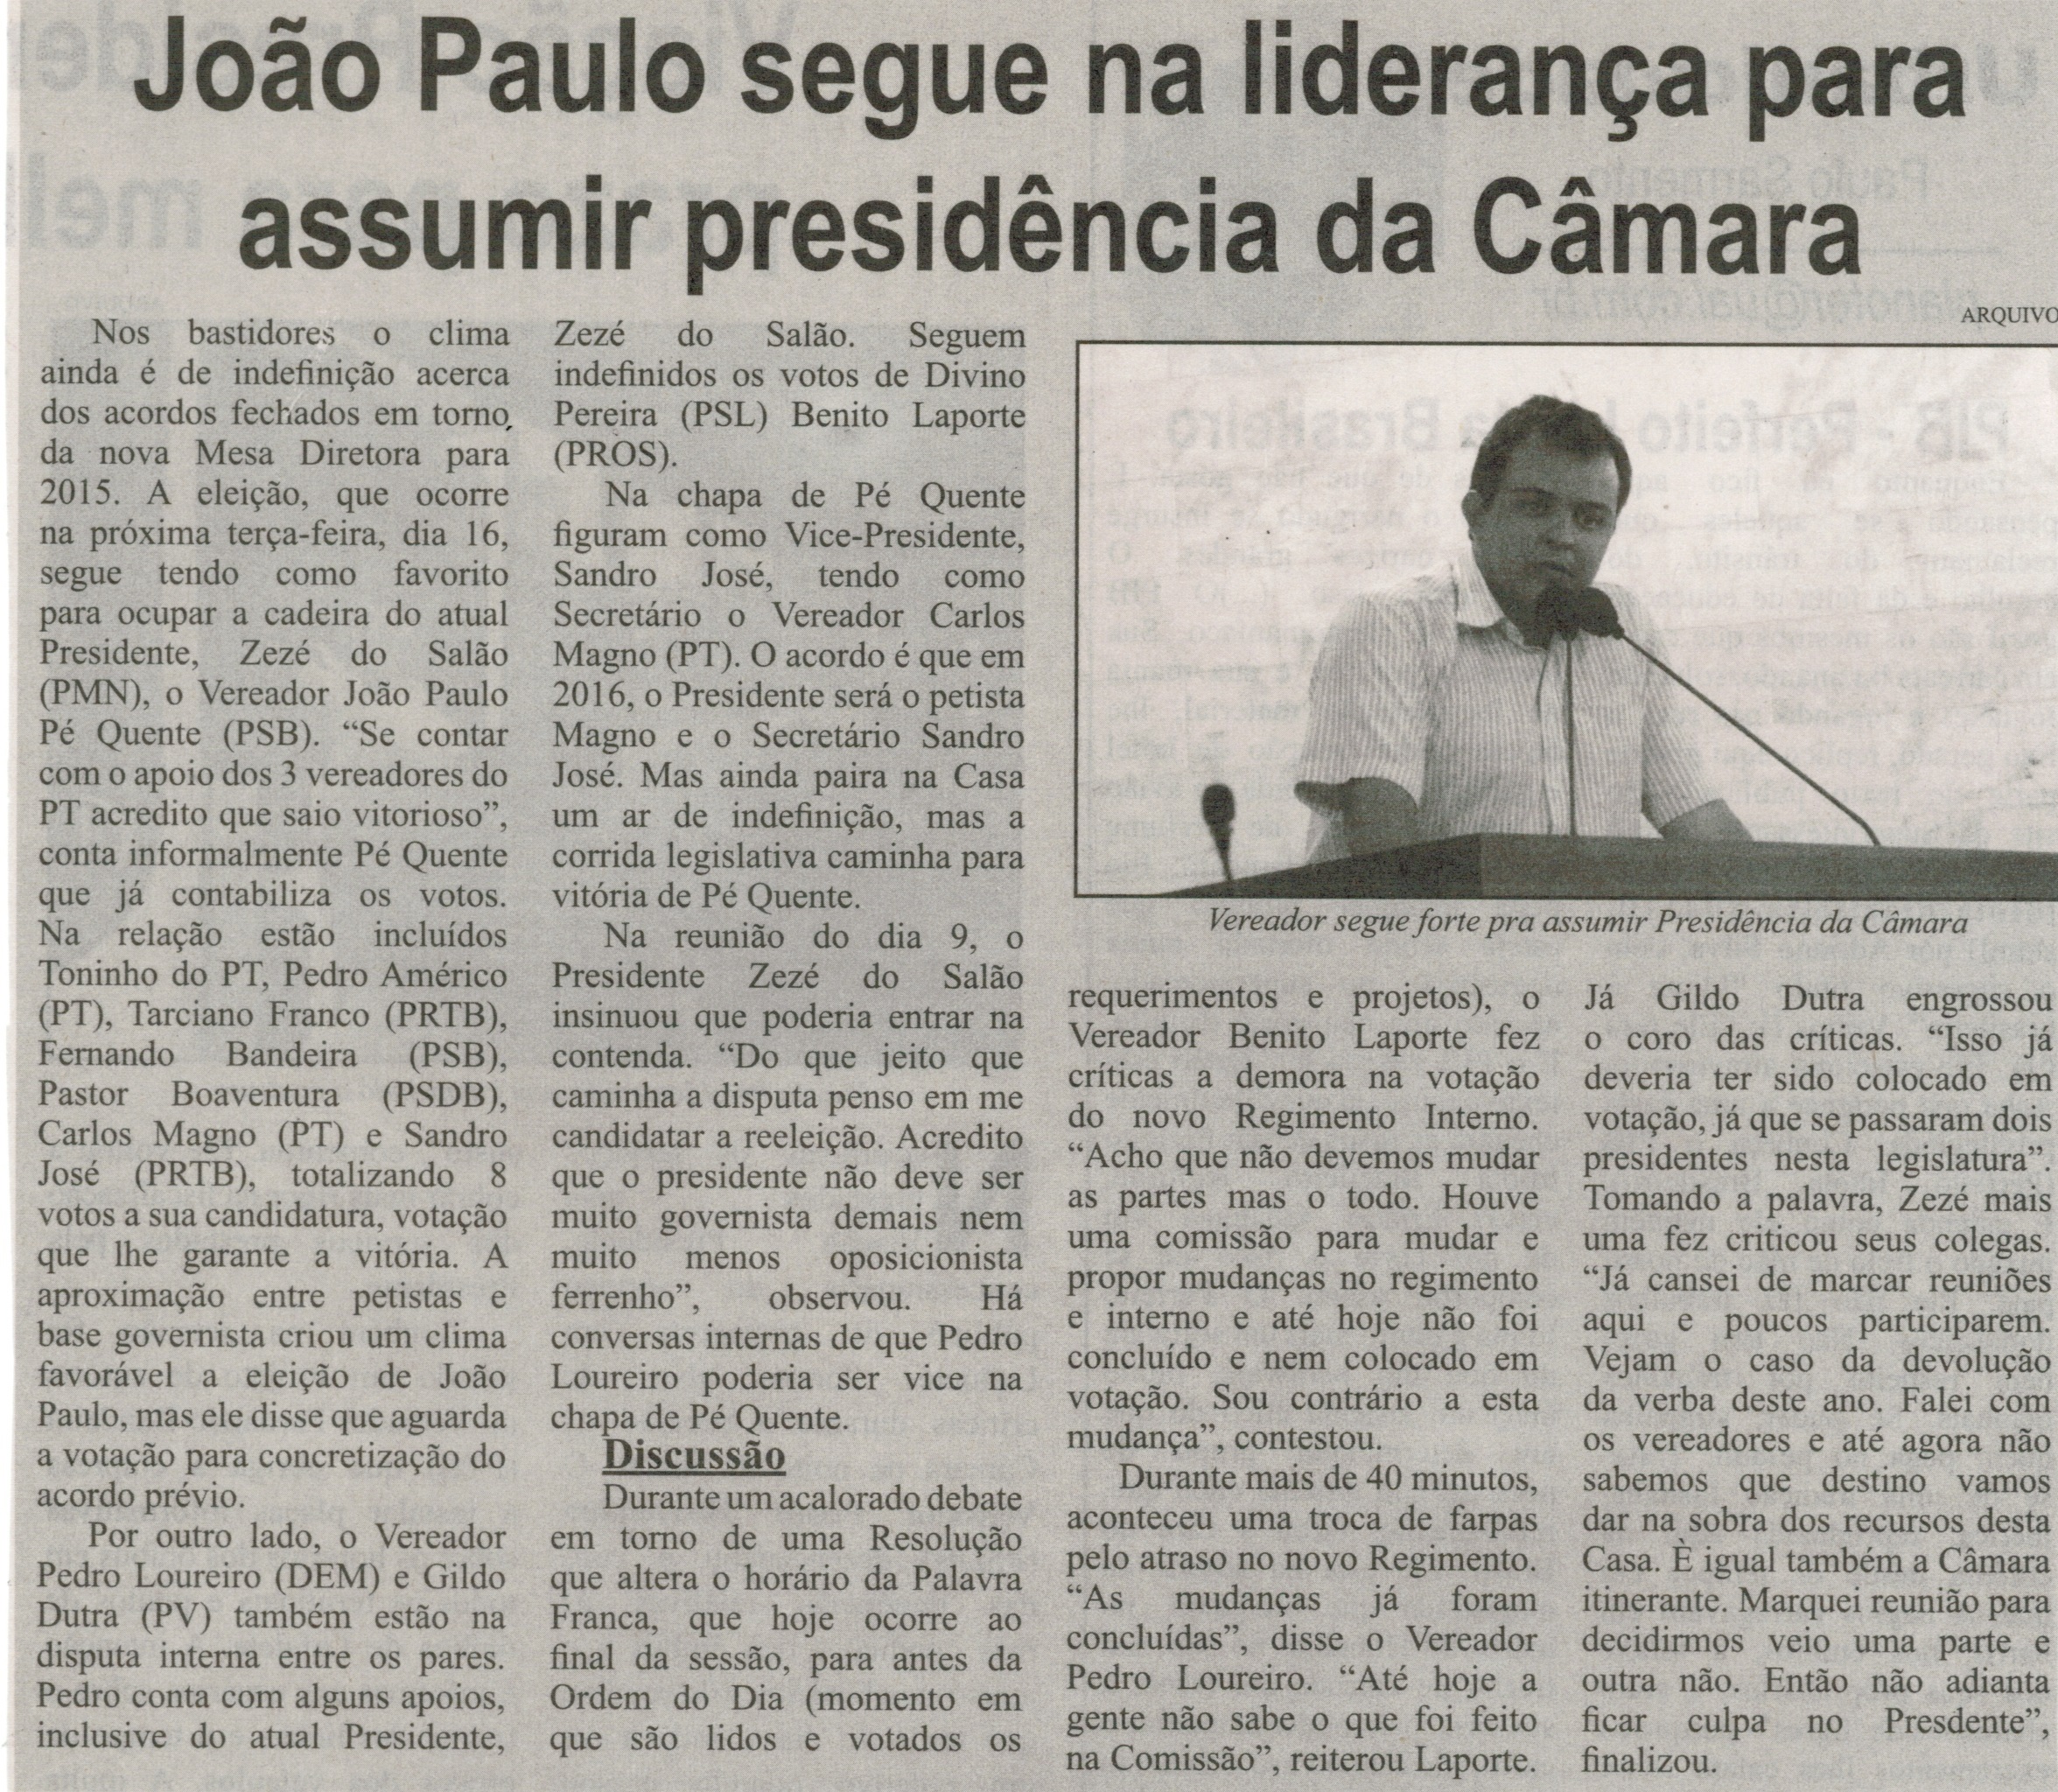 João Paulo segue na liderança para assumir presidência da Câmara. Correio de Minas, Conselheiro Lafaiete, 13 dez. 2014, p.3.